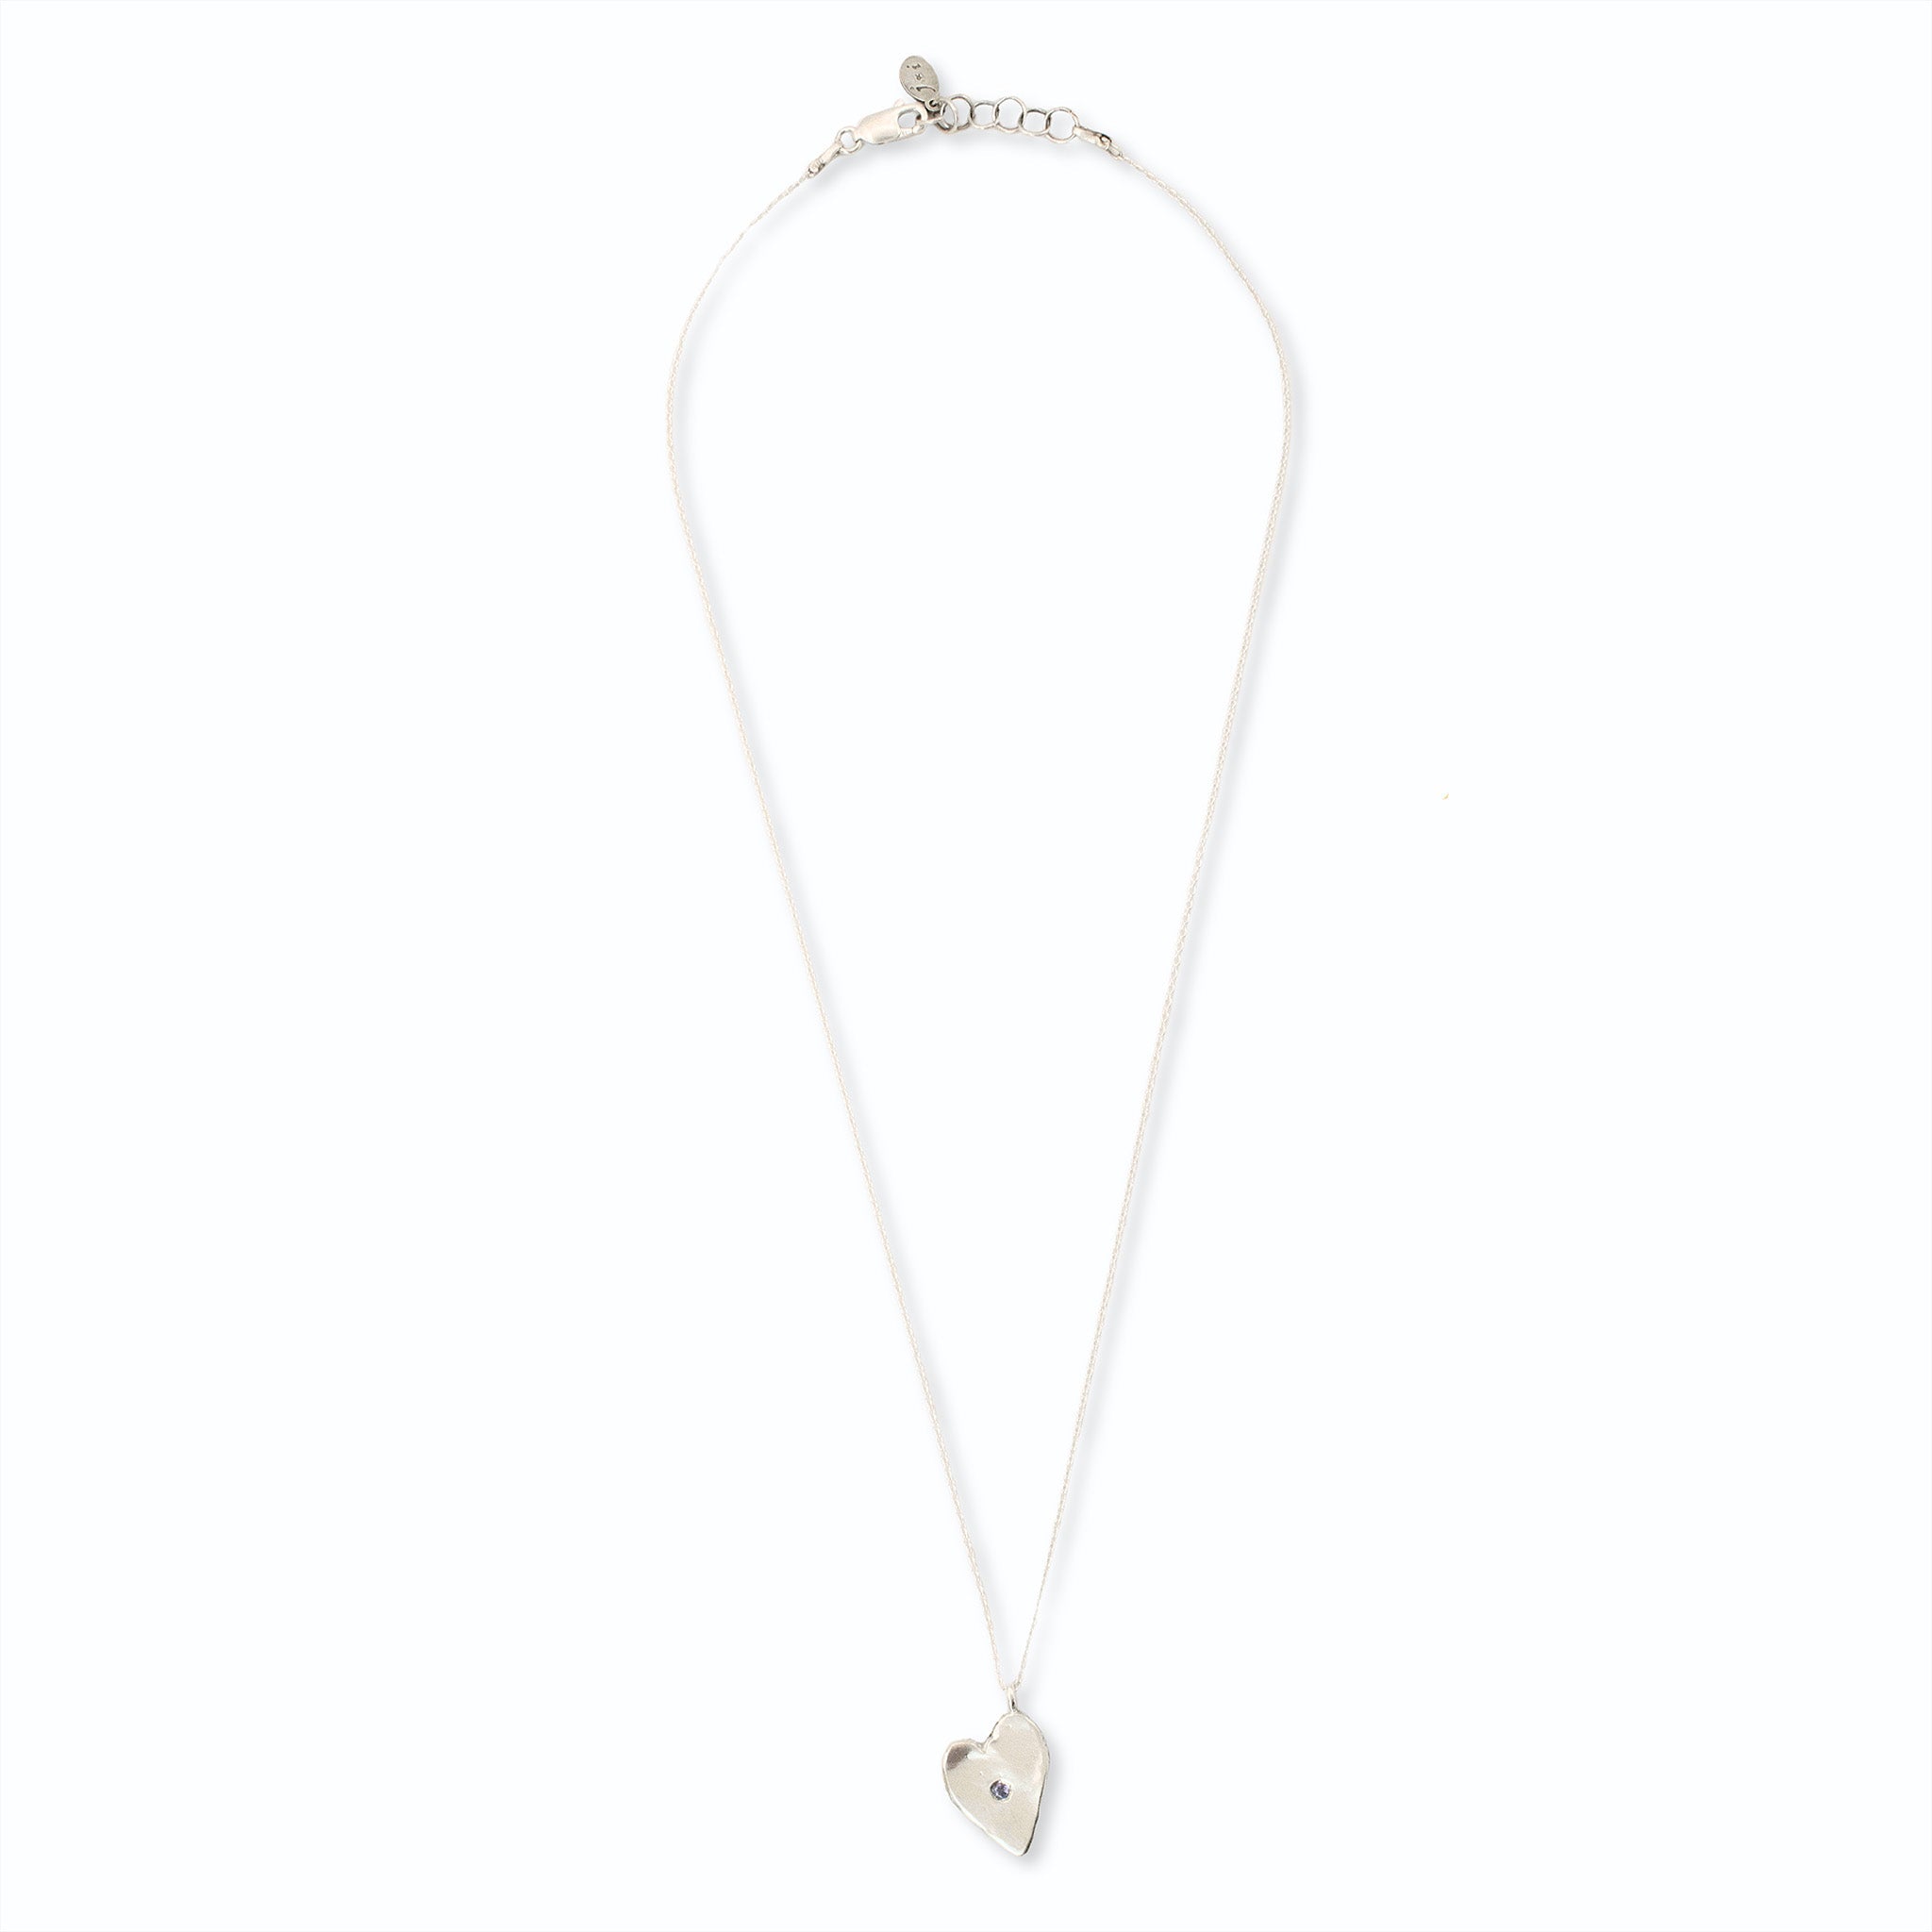 Indigo Dream Heart Necklace - Necklaces